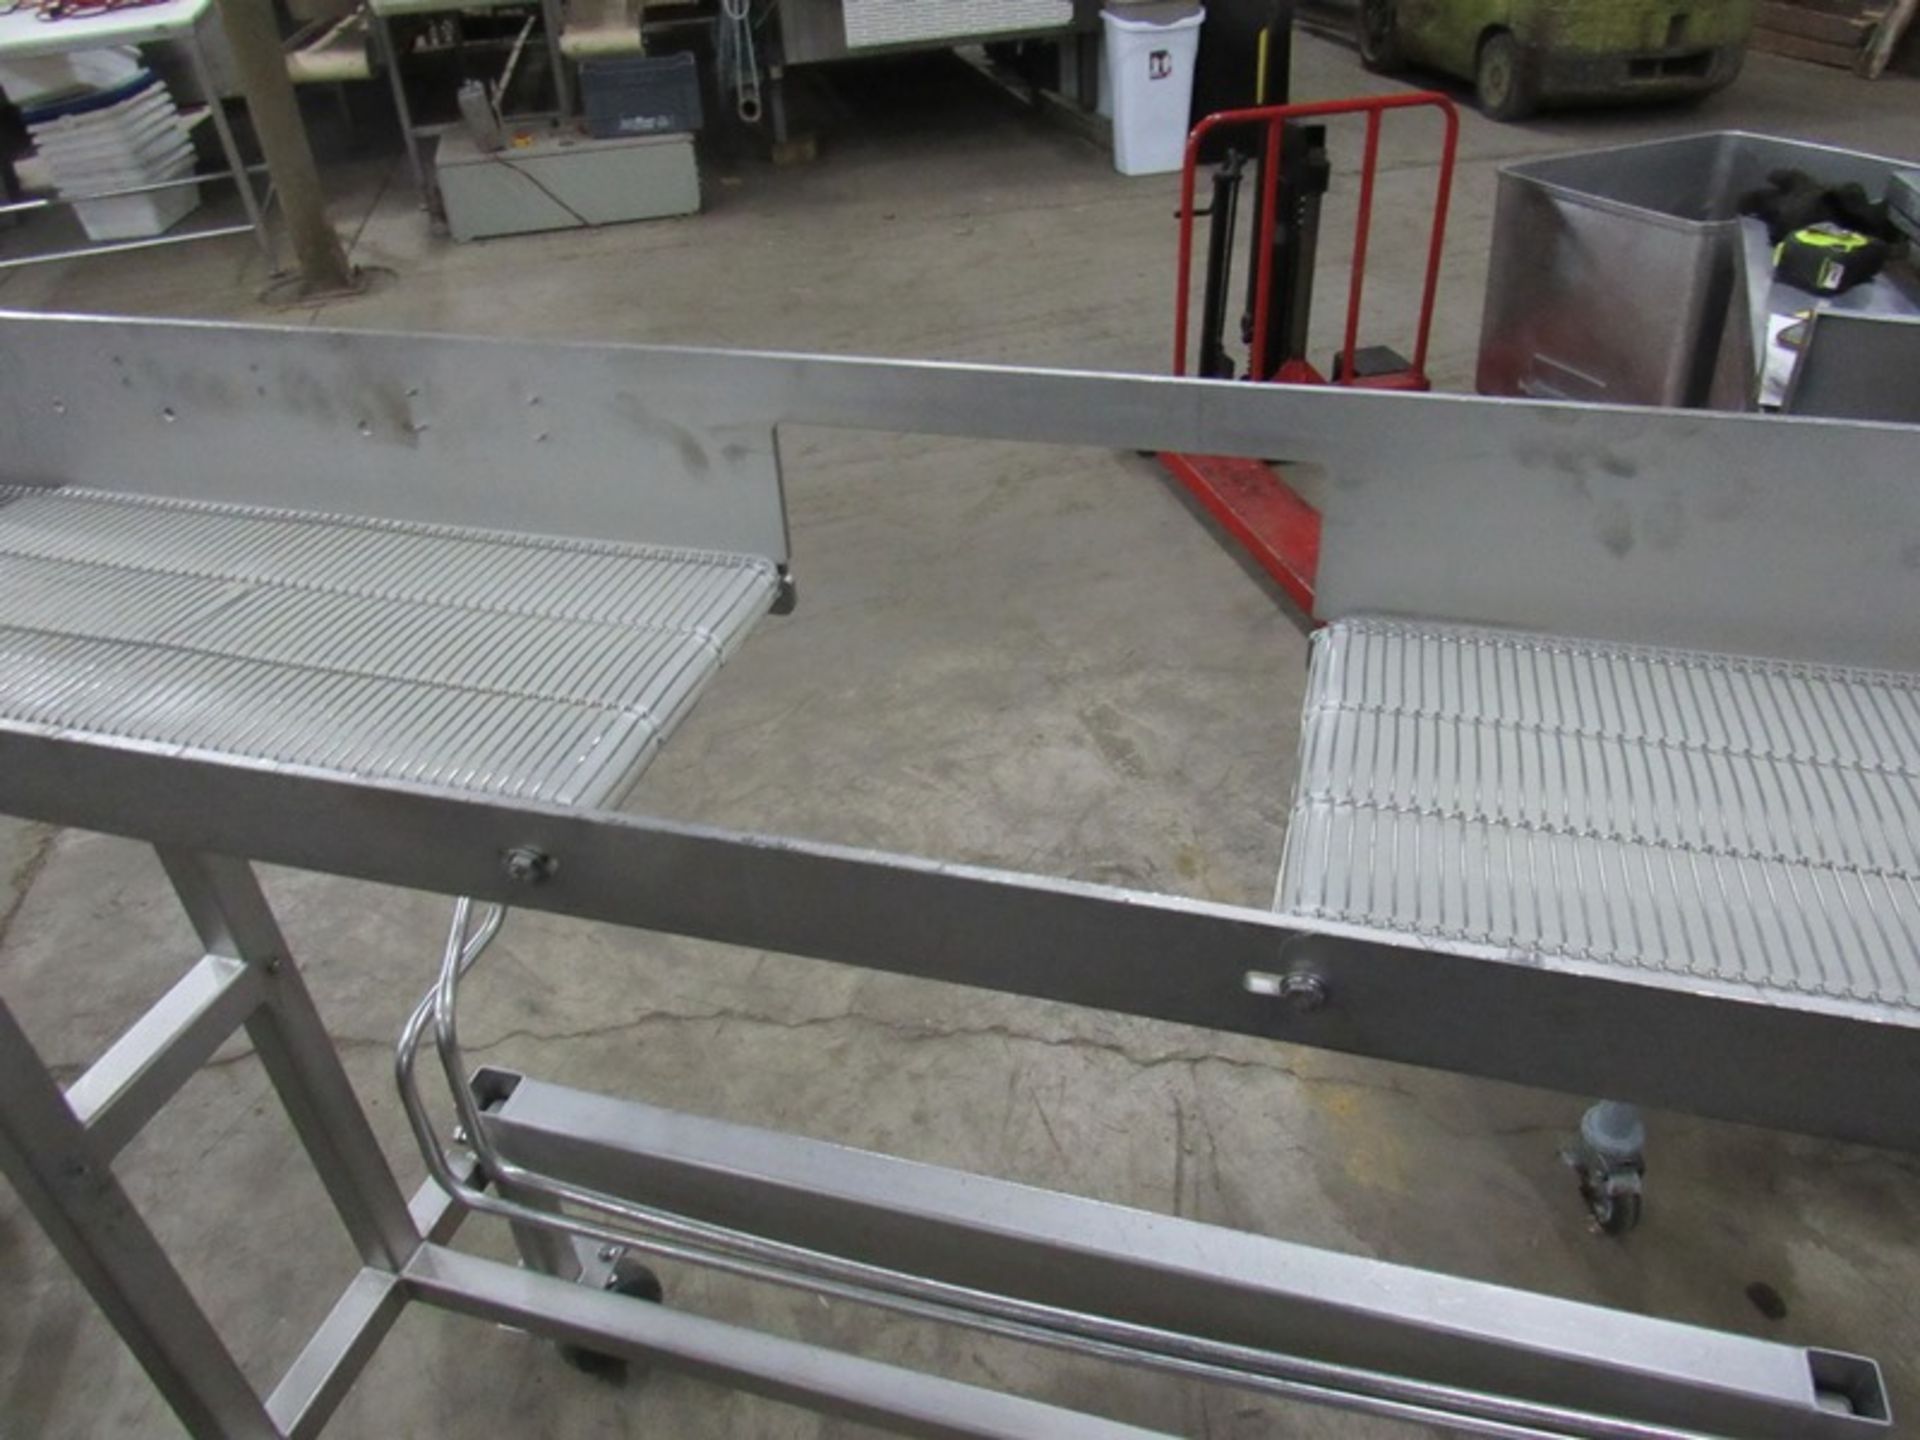 JBT Stainless Steel Conveyor, Ser. #120, 8" W X 5' L split belt, 10" between belts, hydraulic drive - Image 5 of 5